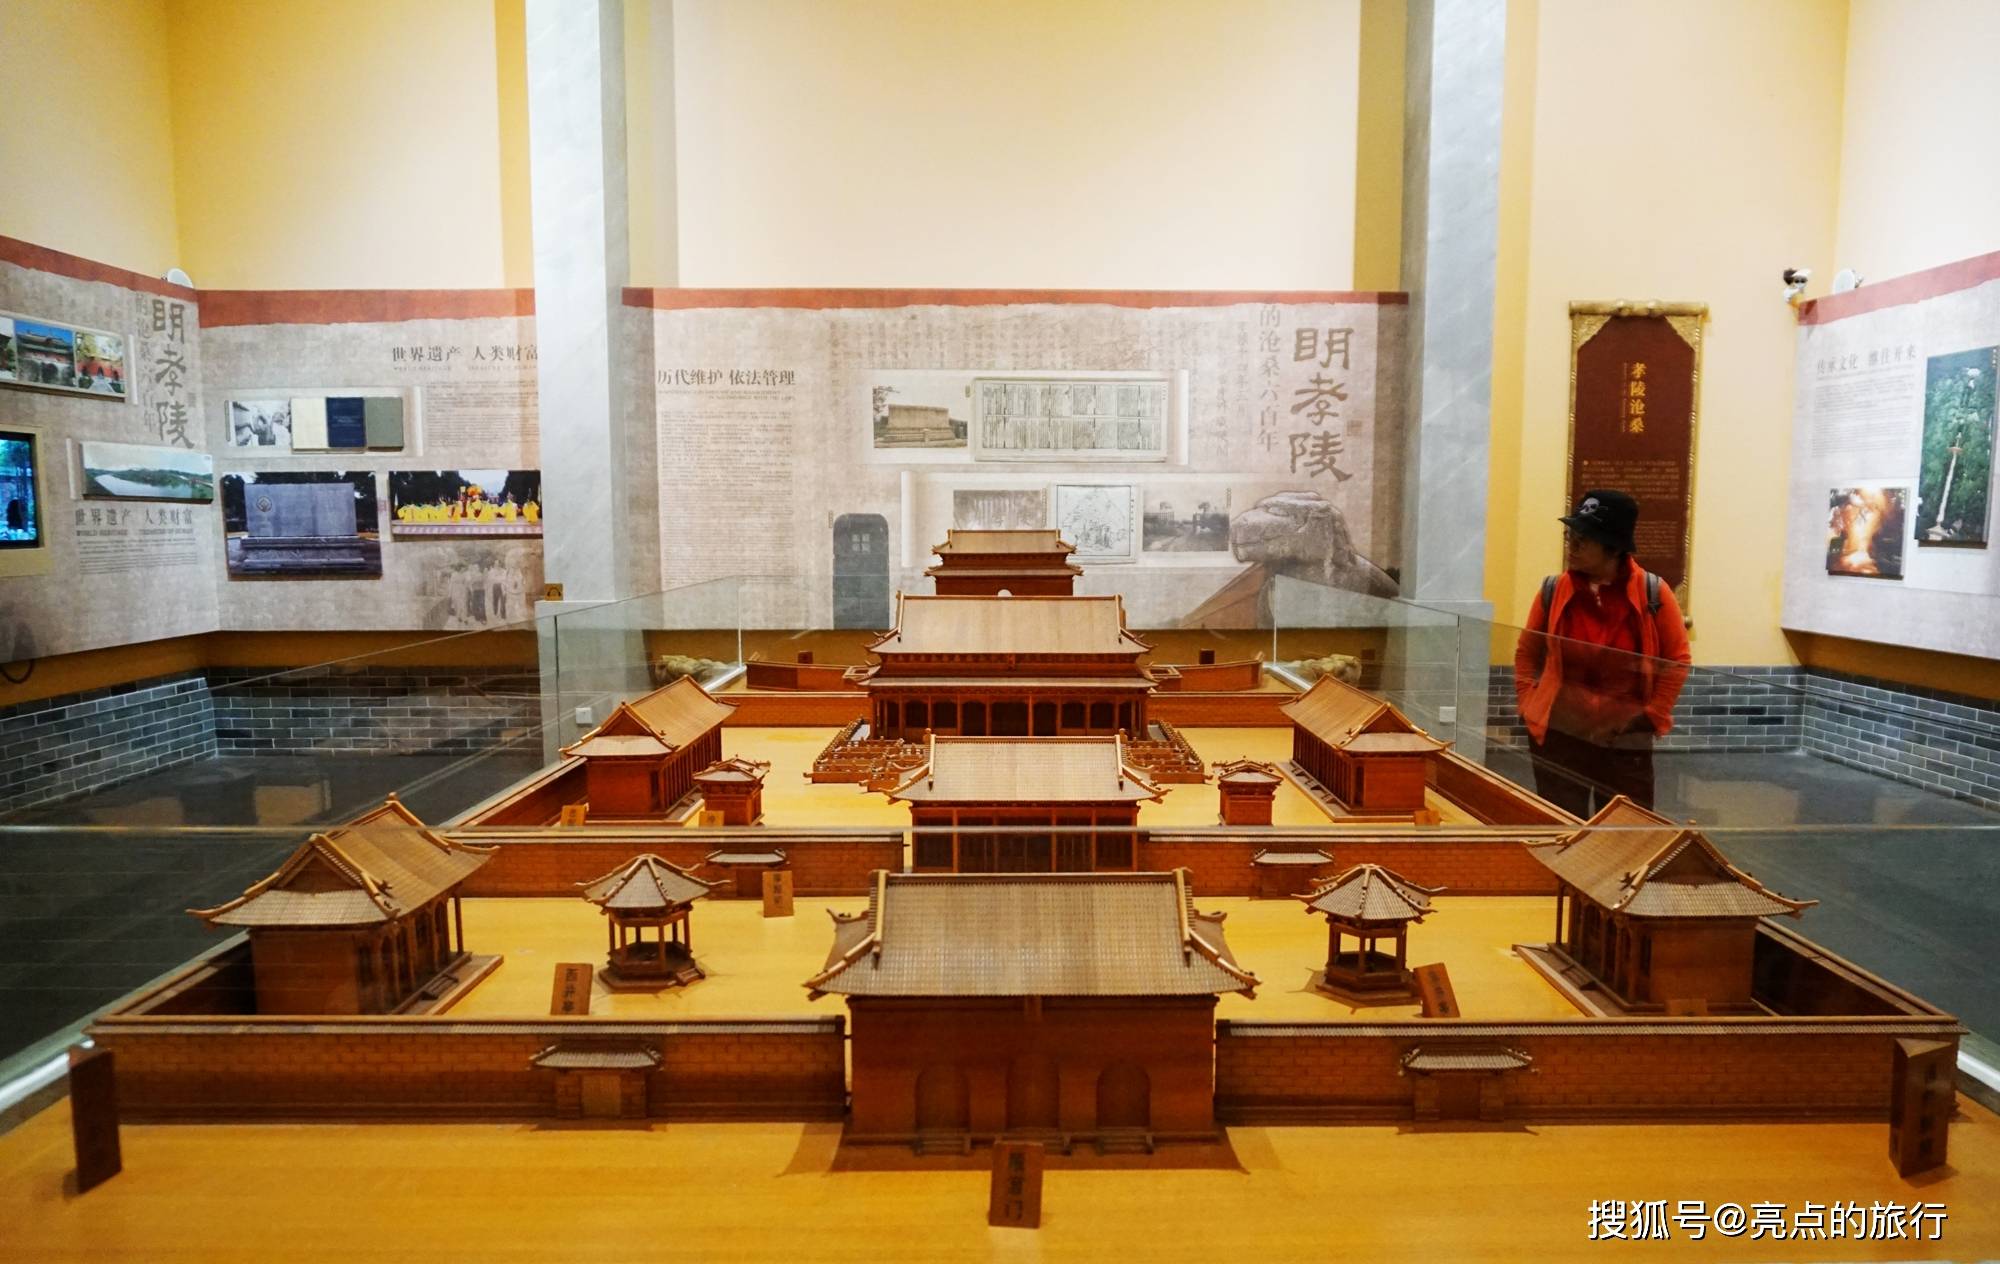 走进明孝陵博物馆,探寻明文化历史和传奇帝王朱元璋的非凡魅力